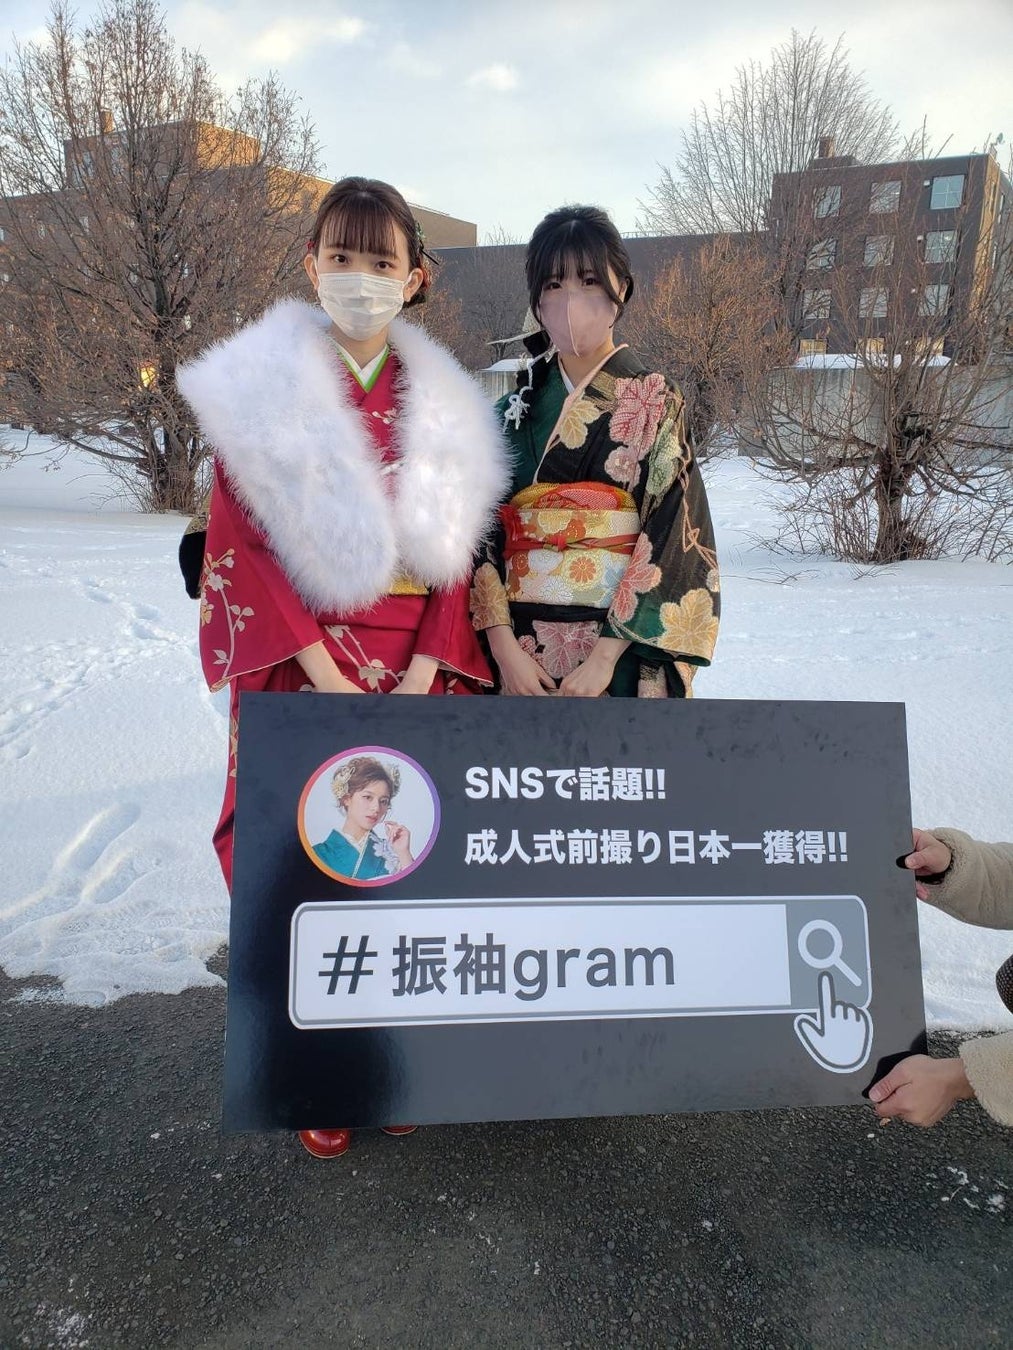 地元白石区の新成人の笑顔を残したい『#振袖gram』北海道札幌市白石区振袖記念写真プロジェクト企画のサブ画像2